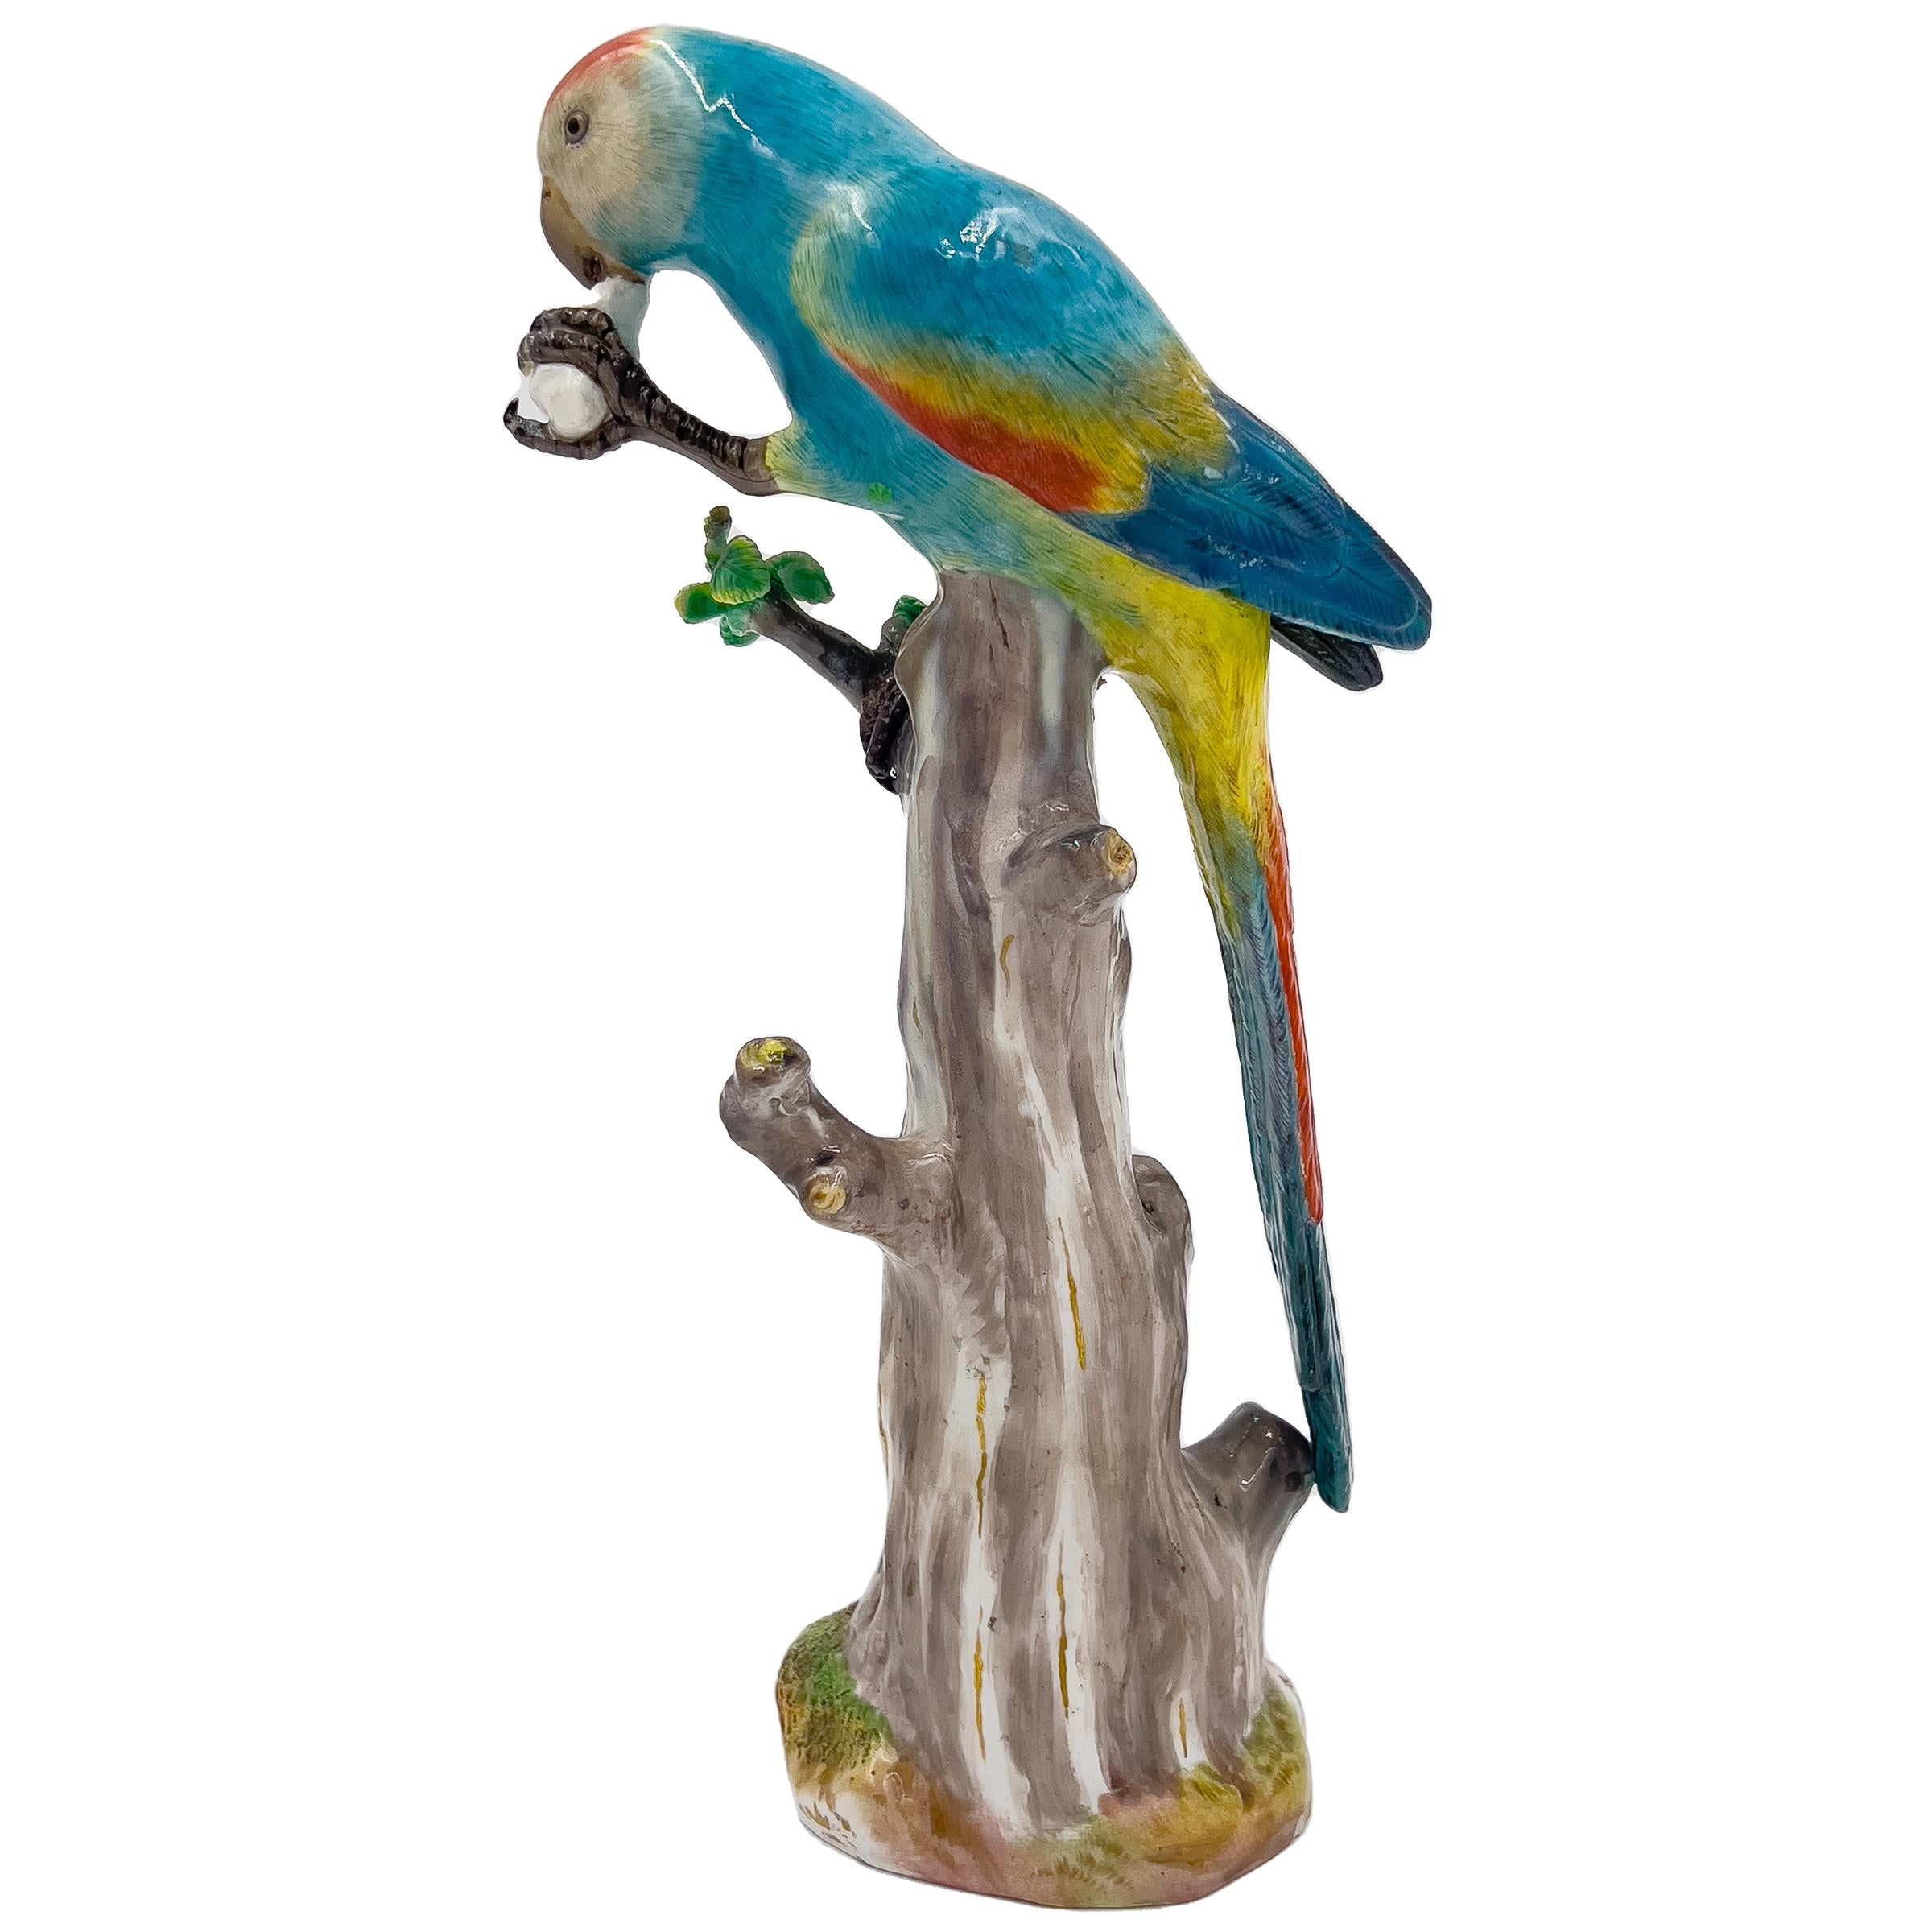 Cette exquise figurine animale de Meissen datant du XIXe siècle représente un perroquet multicolore et vibrant, perché au sommet d'une souche d'arbre, en train de déguster son repas. Le savoir-faire artisanal est évident dans les détails complexes